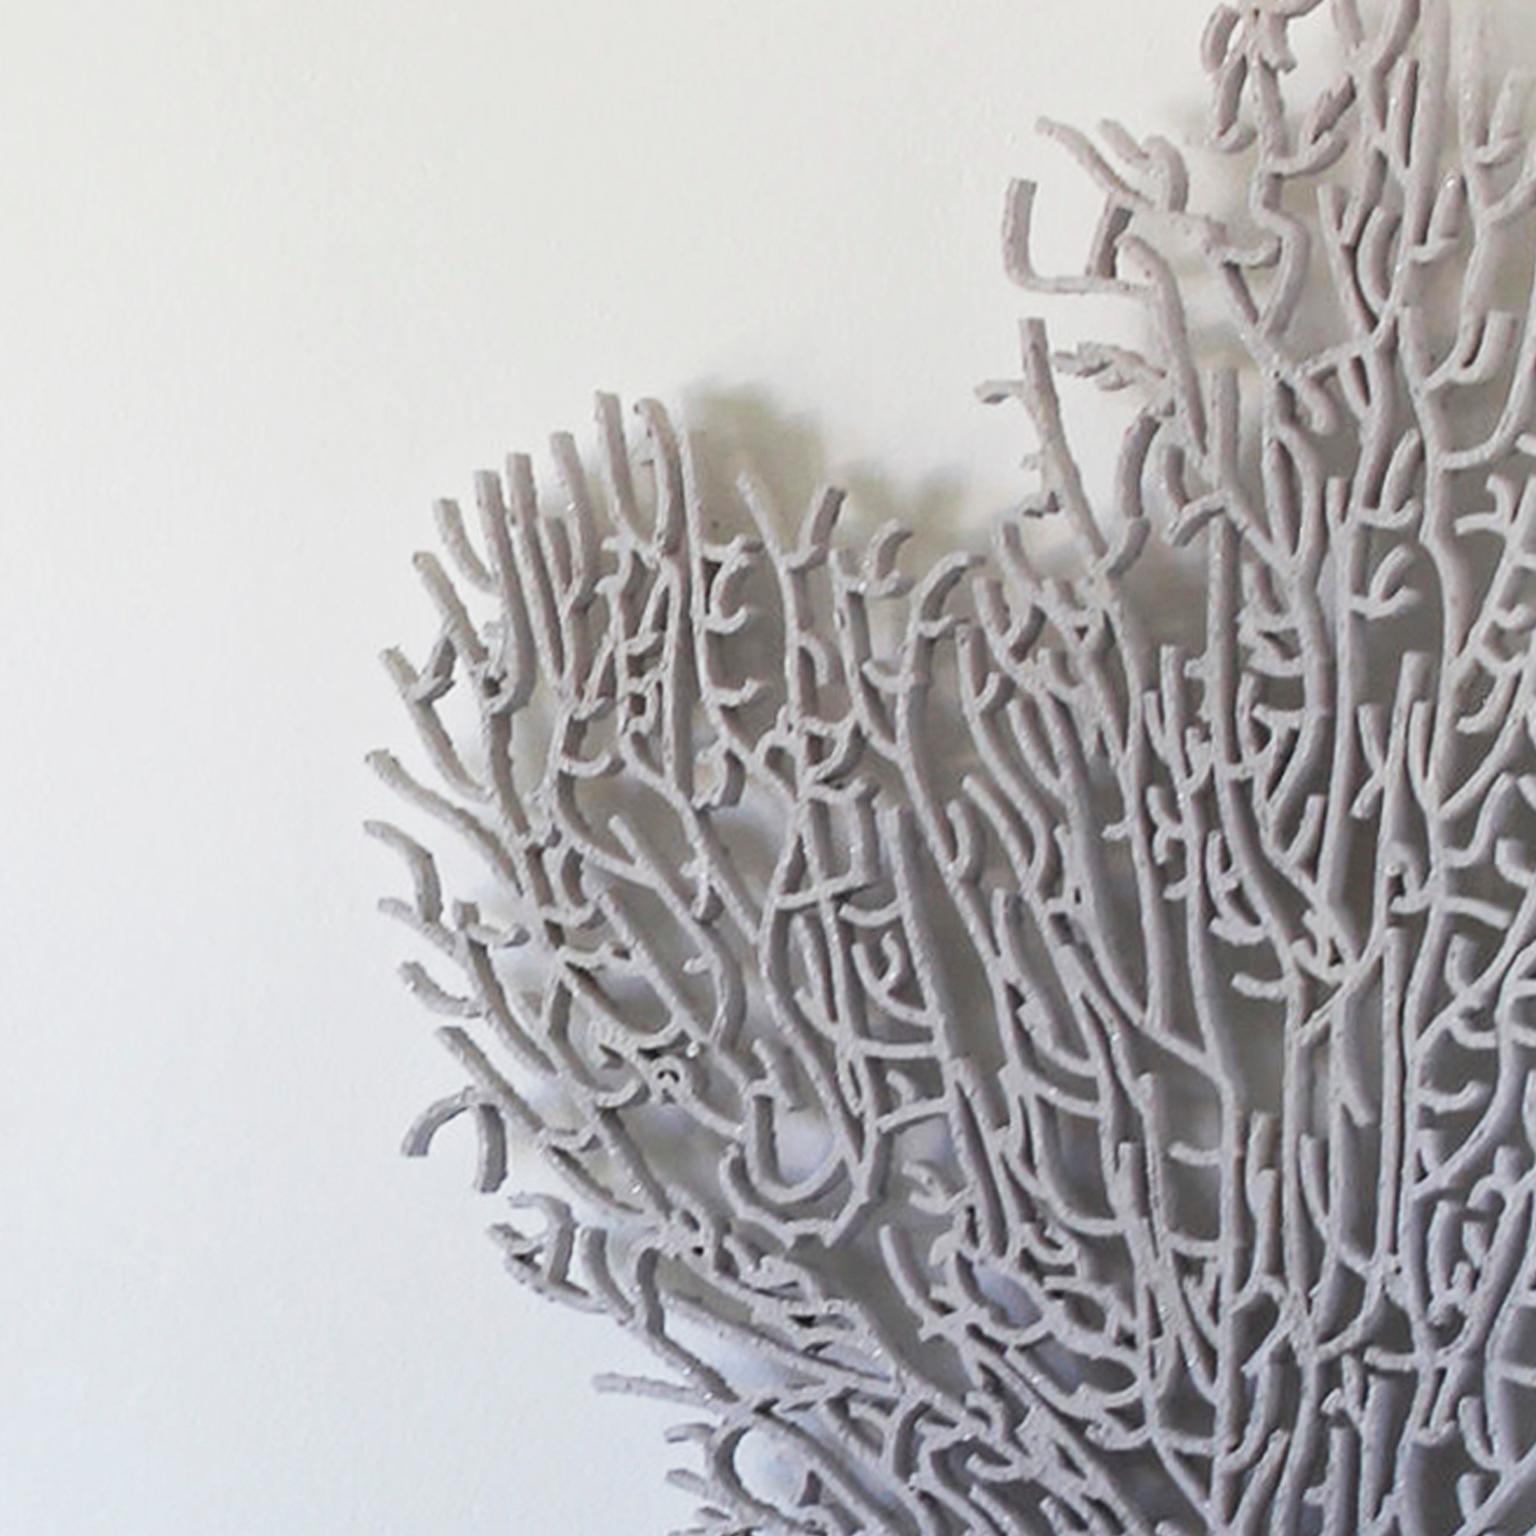 Korallen sind von hoher Qualität. Skulptur einer Skulptur aus der Zeit. Natürliche natürliche Texturen – Sculpture von Arozarena De La Fuente